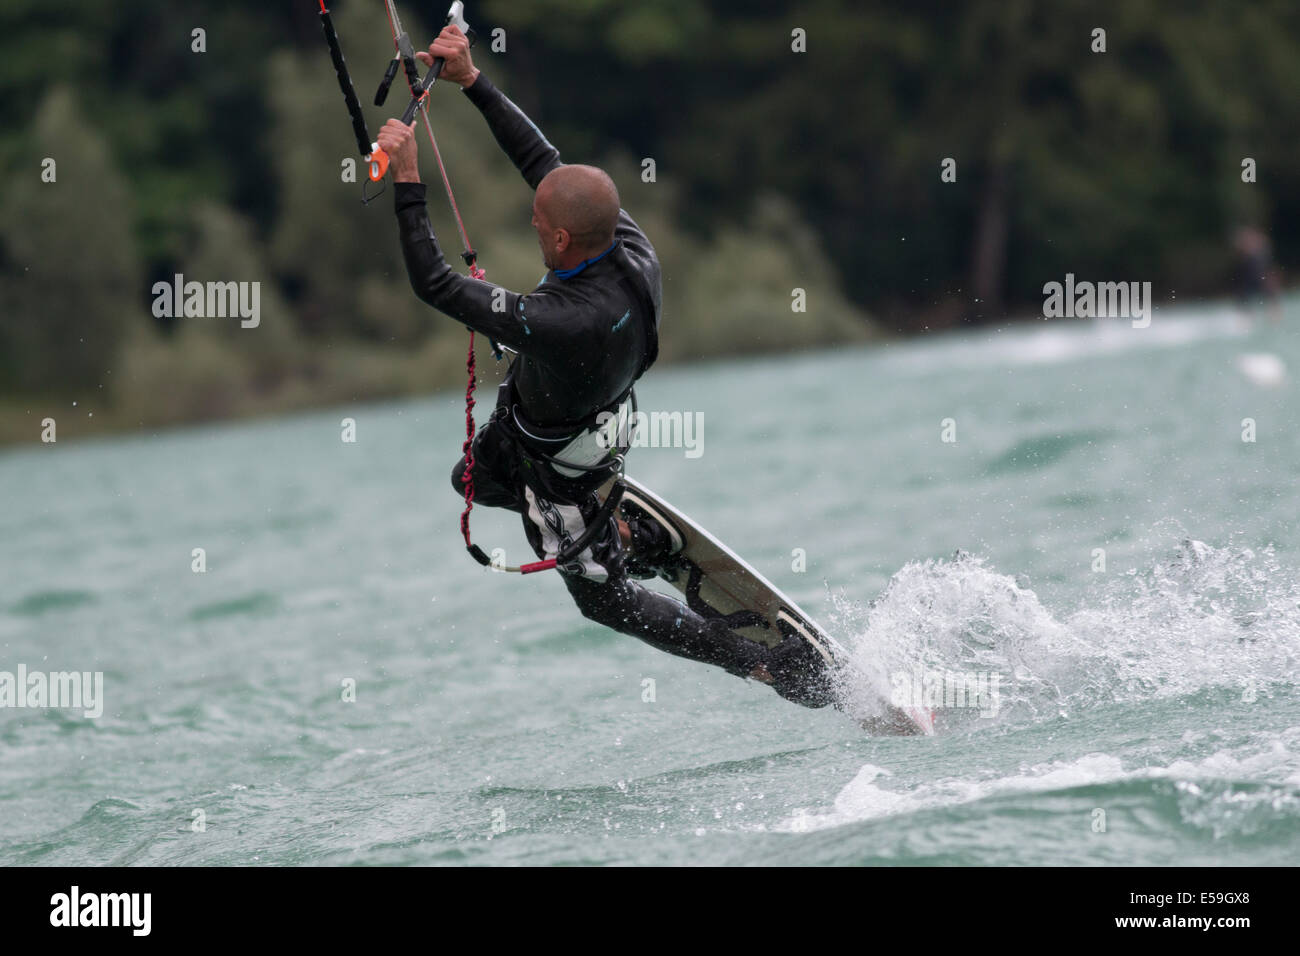 Lac DE SANTA CROCE, ITALIE - 13 juillet : kite-surfer professionnel démontrant sa capacité 2014, Juillet 13, 2014 Banque D'Images